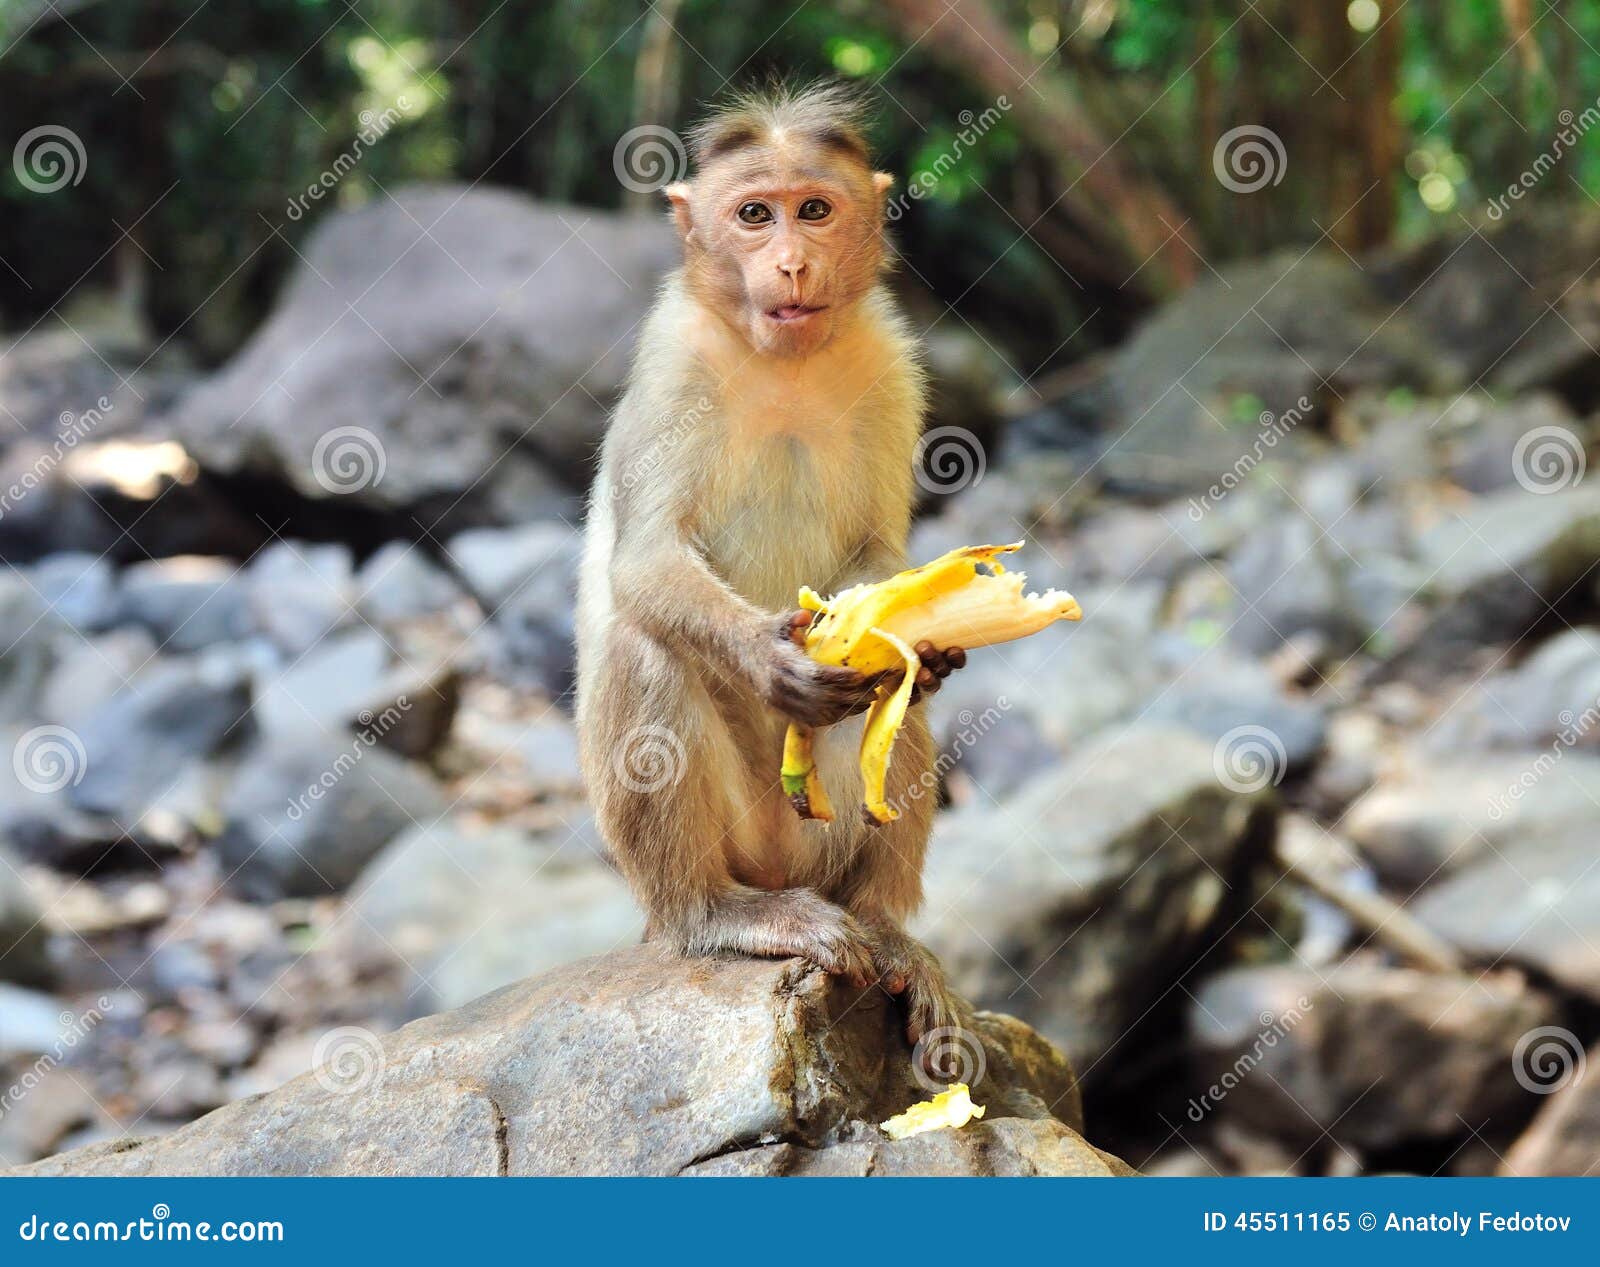 Обезьяна подавилася бананом. Маленькая обезьянка с бананом. Обезьяна с камнем. Обезьяна держит банан. Обезьяна ест банан.